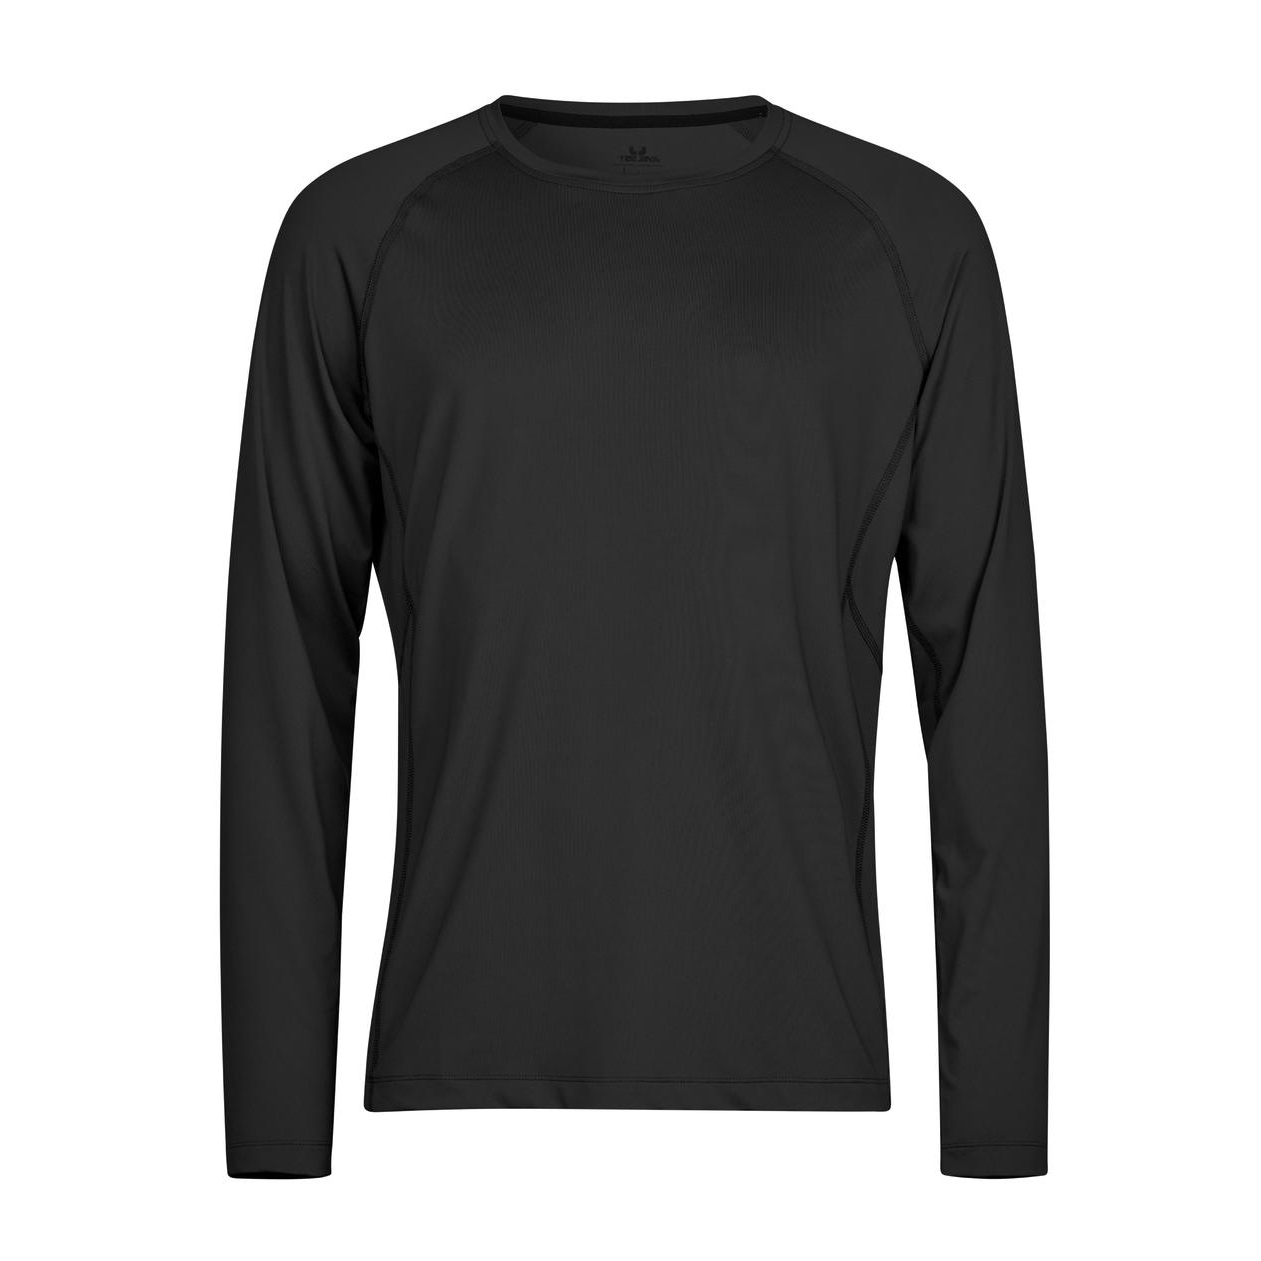 Triko pánské Stedman Tee Jays CoolDry tričko s dlouhými rukávy - černé, XL